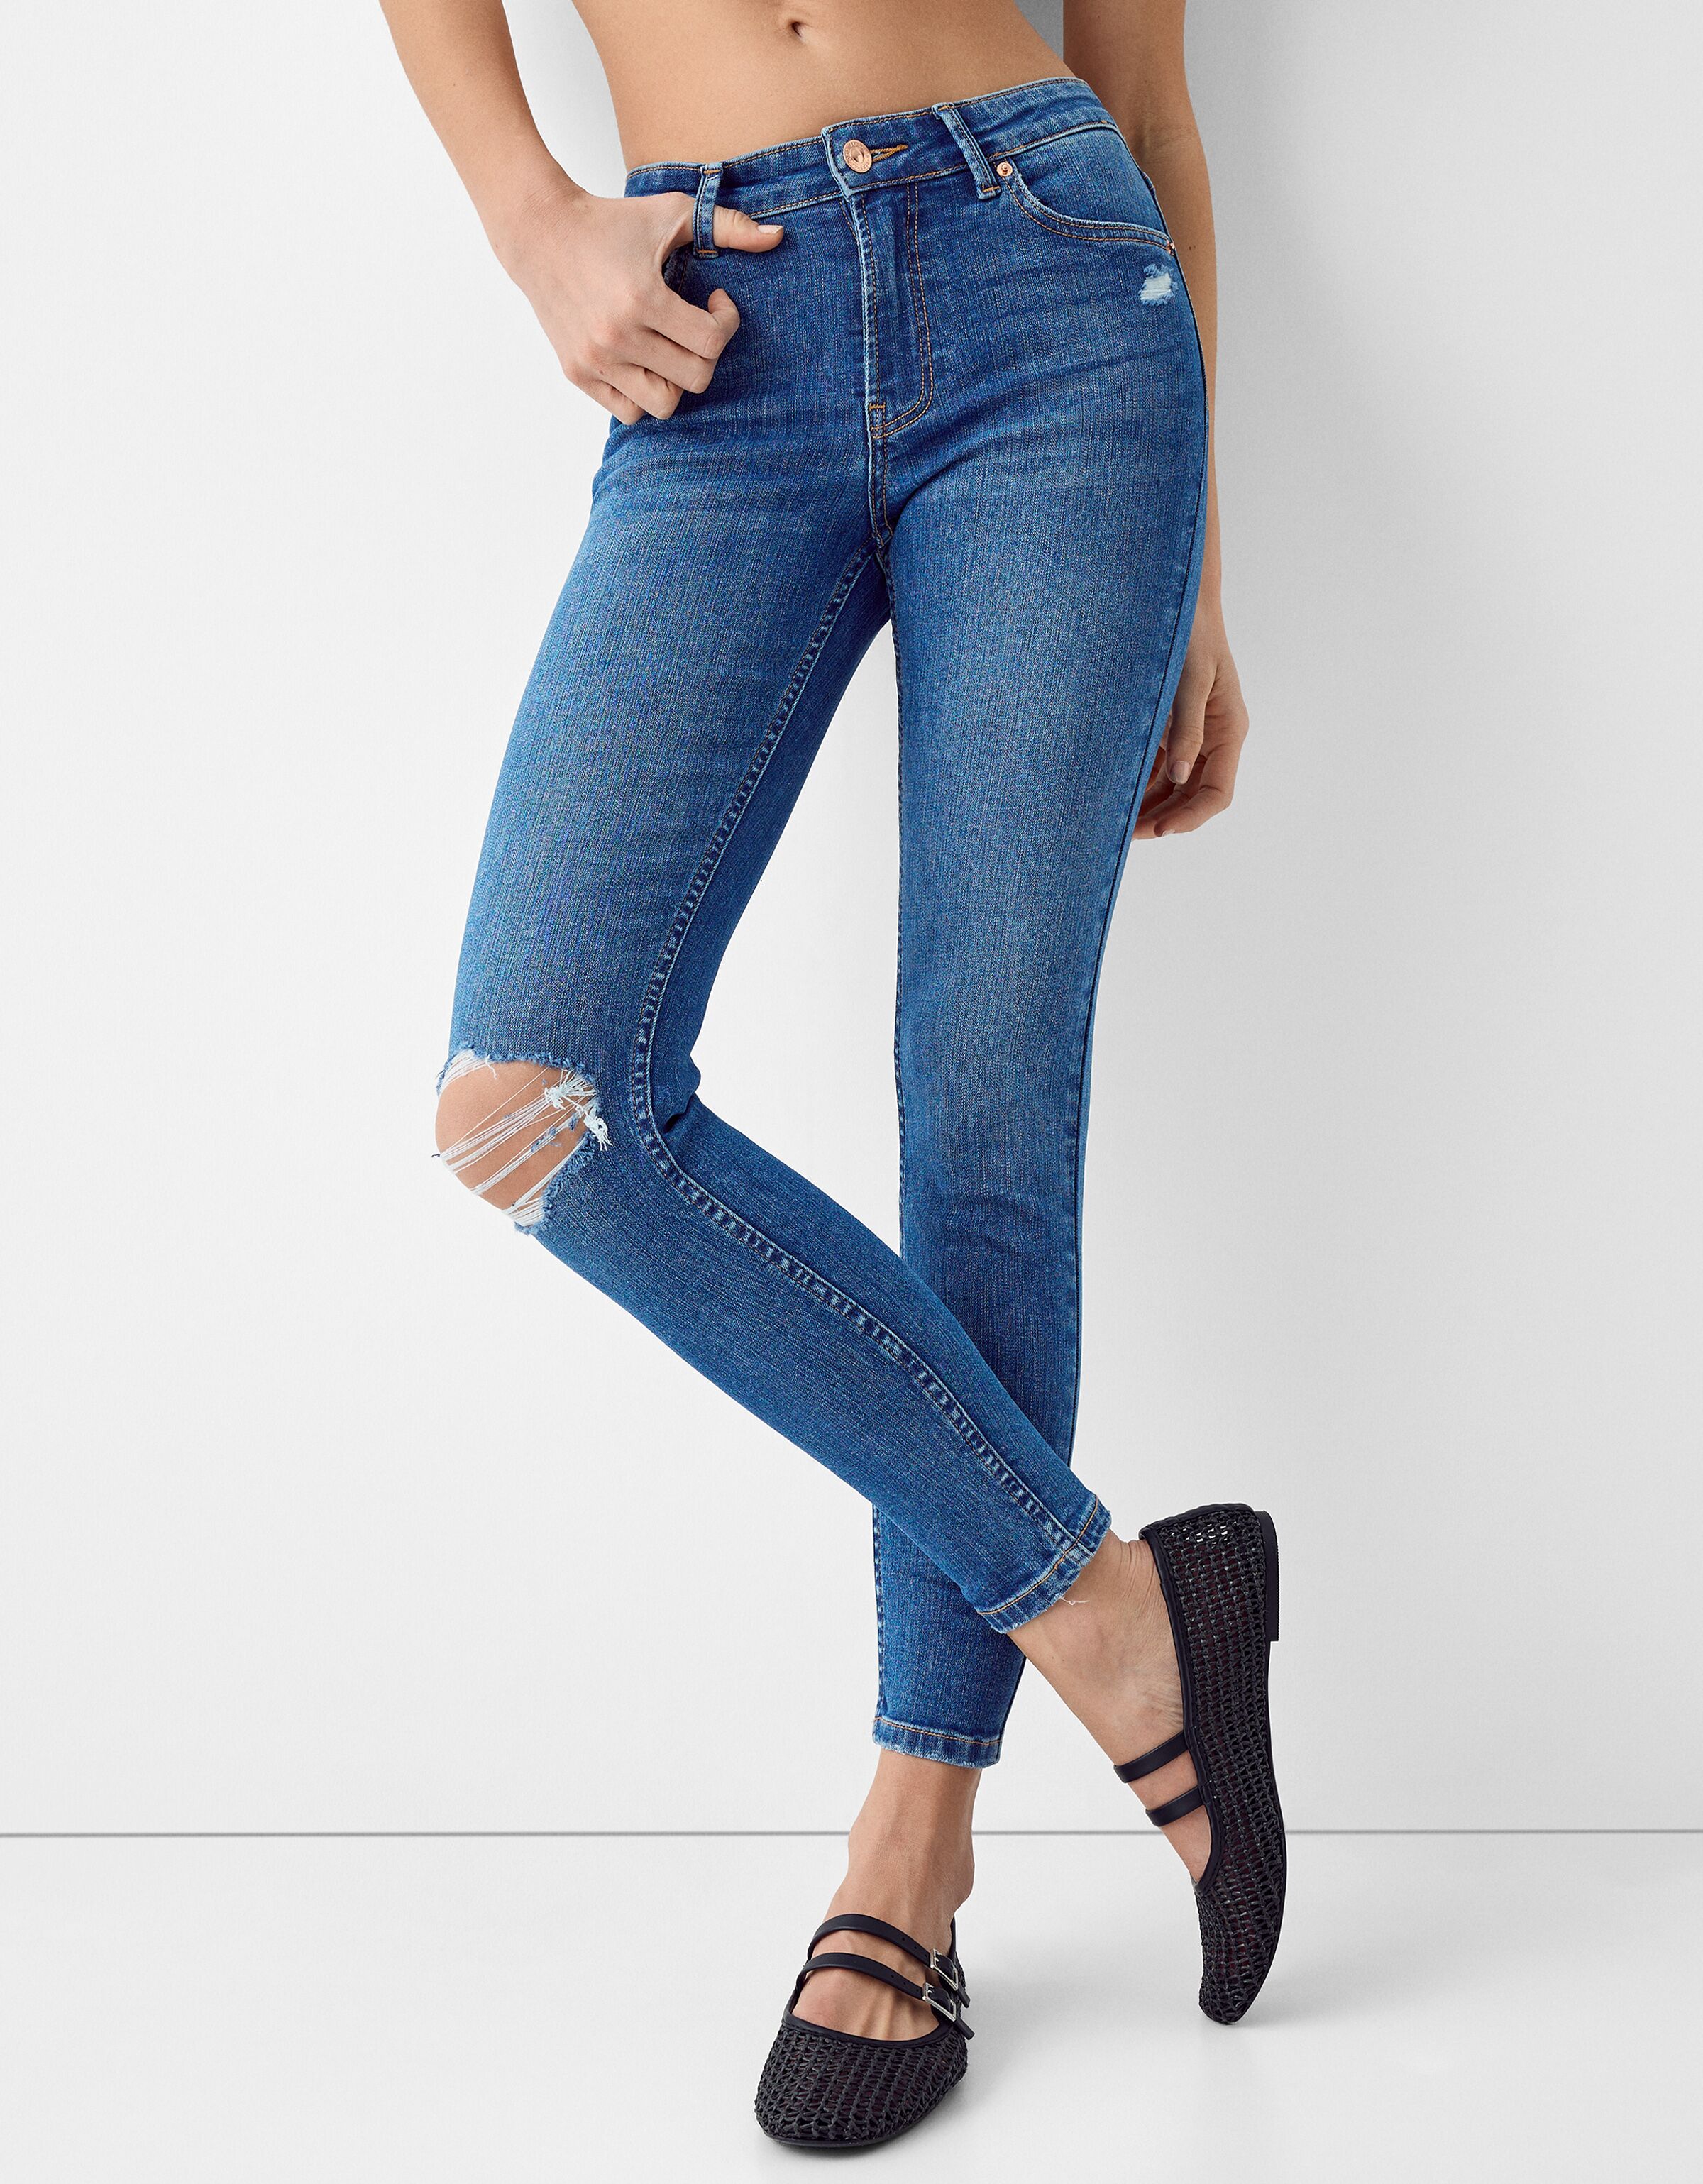 15cm Skinny Low Waist Cotton Denim Jeans